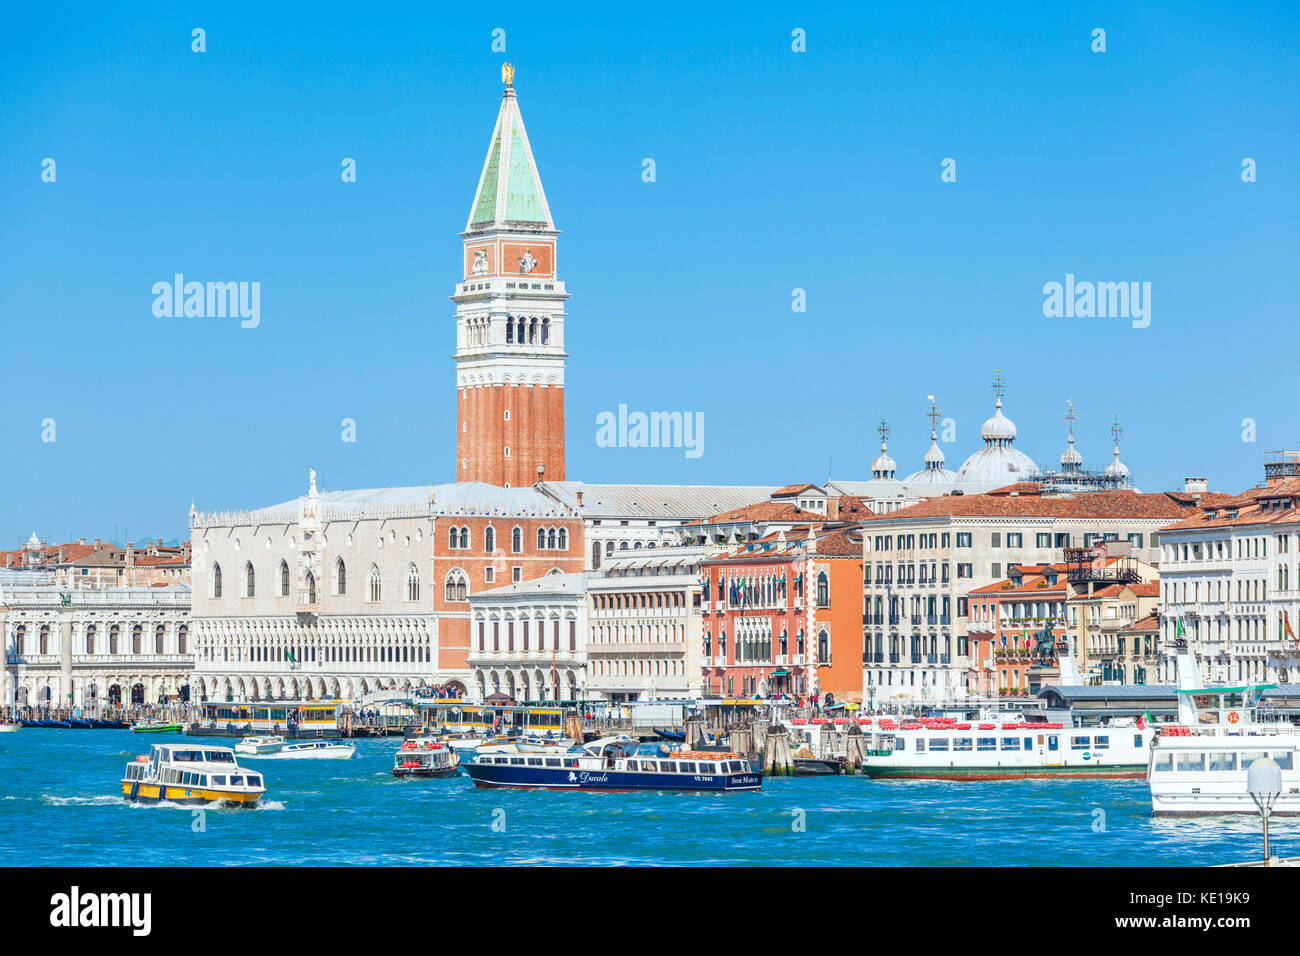 Venise ITALIE VENISE Occupé Bacino San Marco à Venise avec des bateaux-taxis et près de vaporettos palais des Doges et le campanile Venise Italie Europe de l'UE Banque D'Images